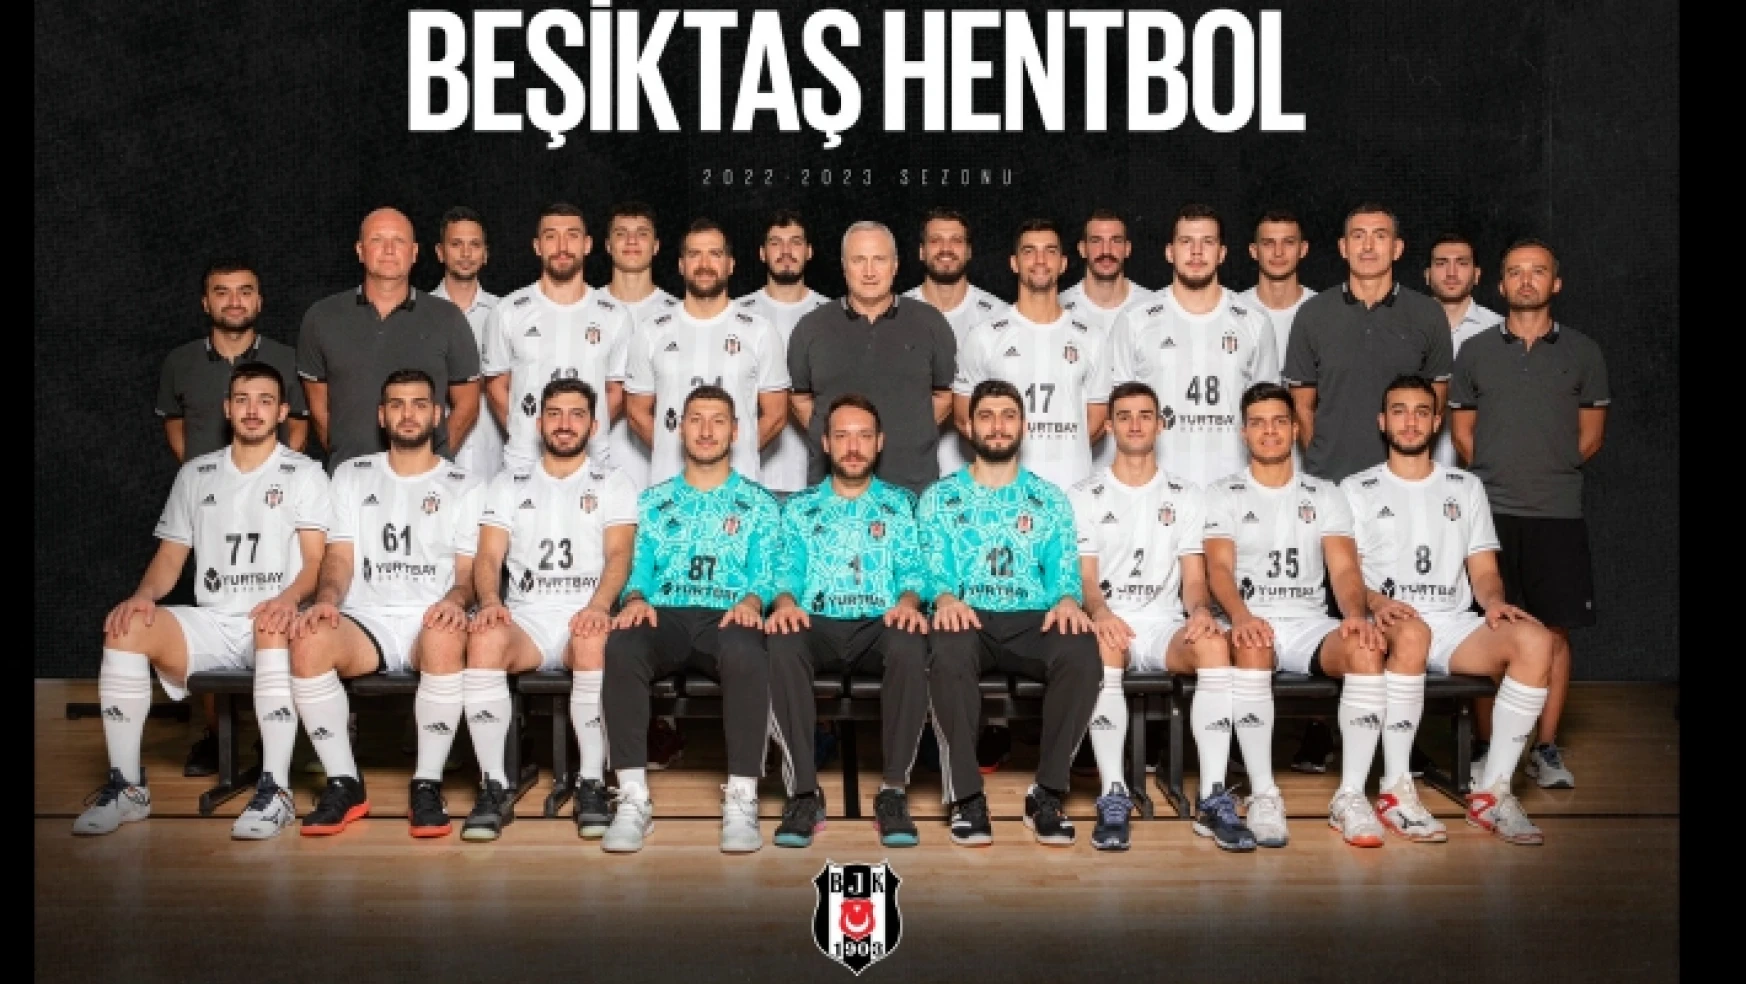 Yurtbay Seramik, Beşiktaş Hentbol Takımı'nın İsim Sponsoru Oldu